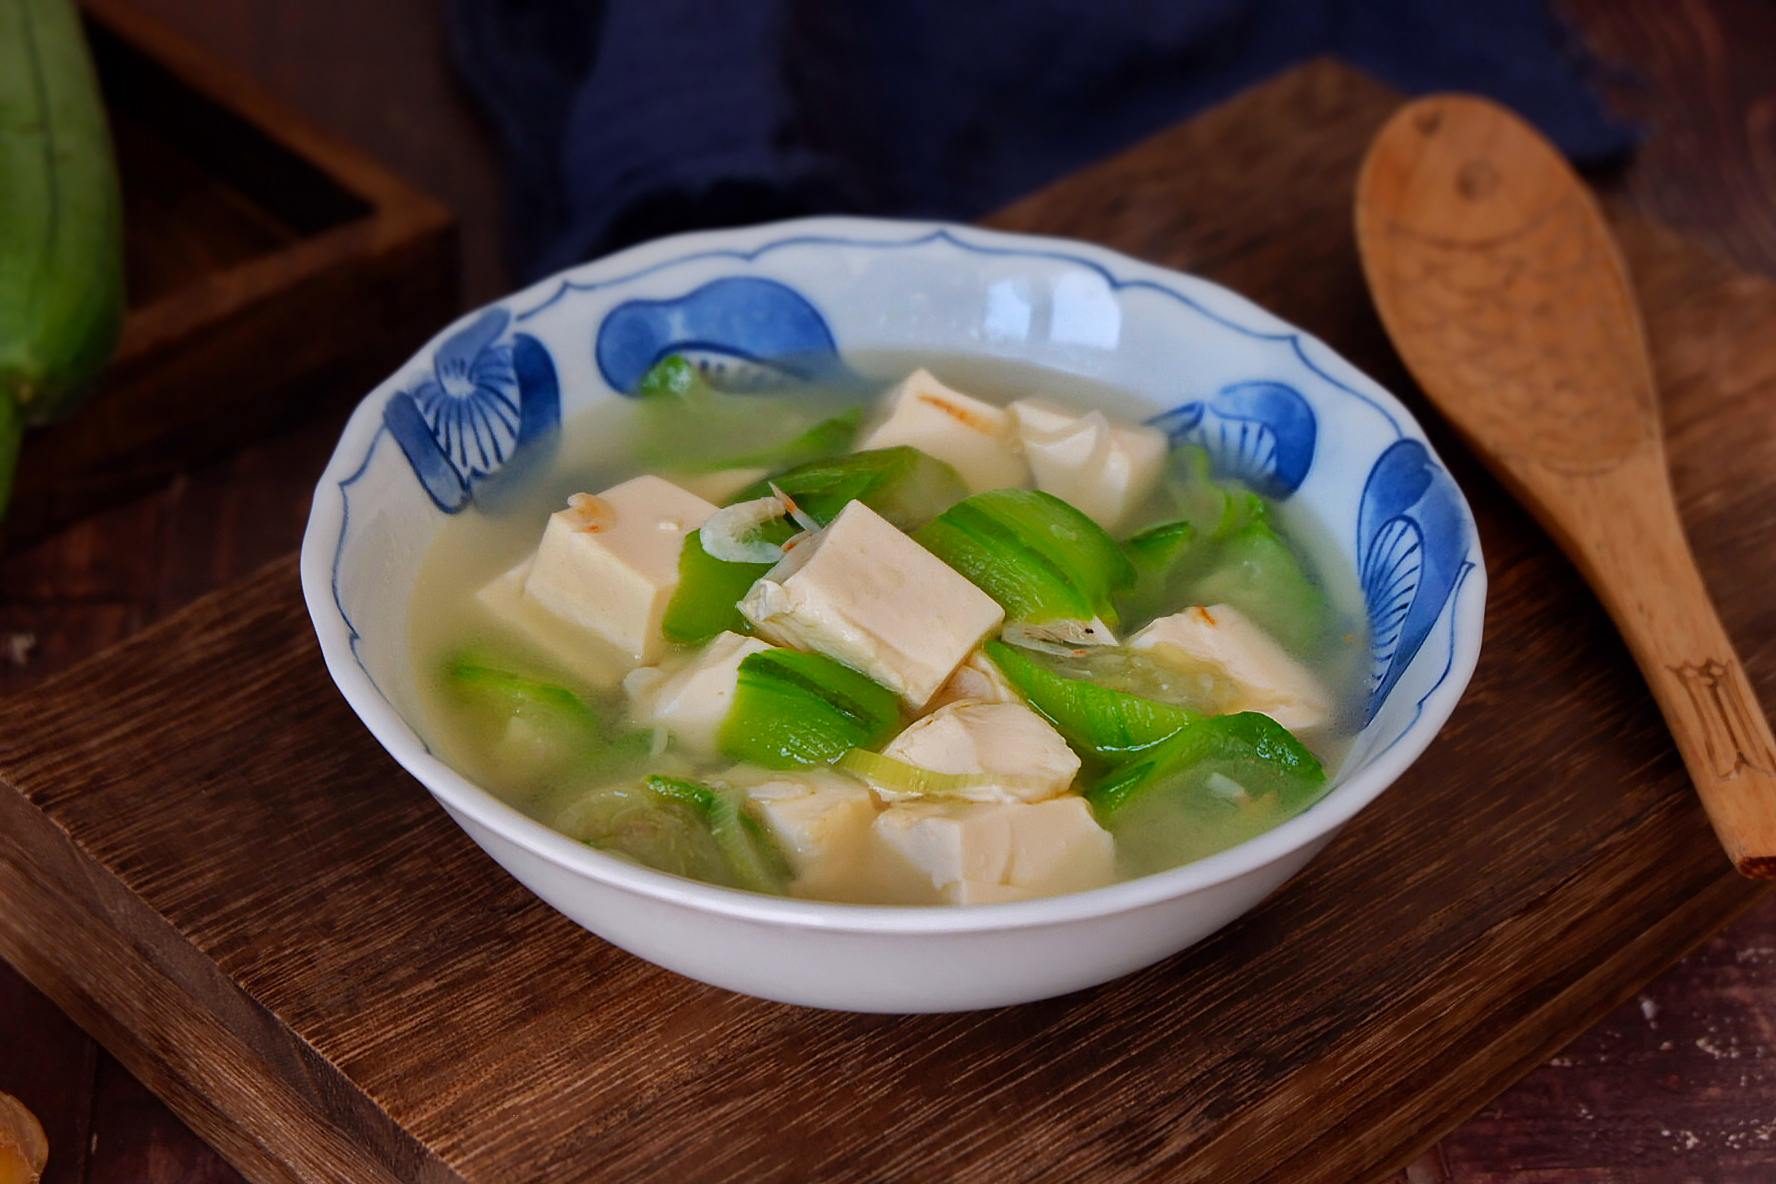 虾皮丝瓜豆腐汤